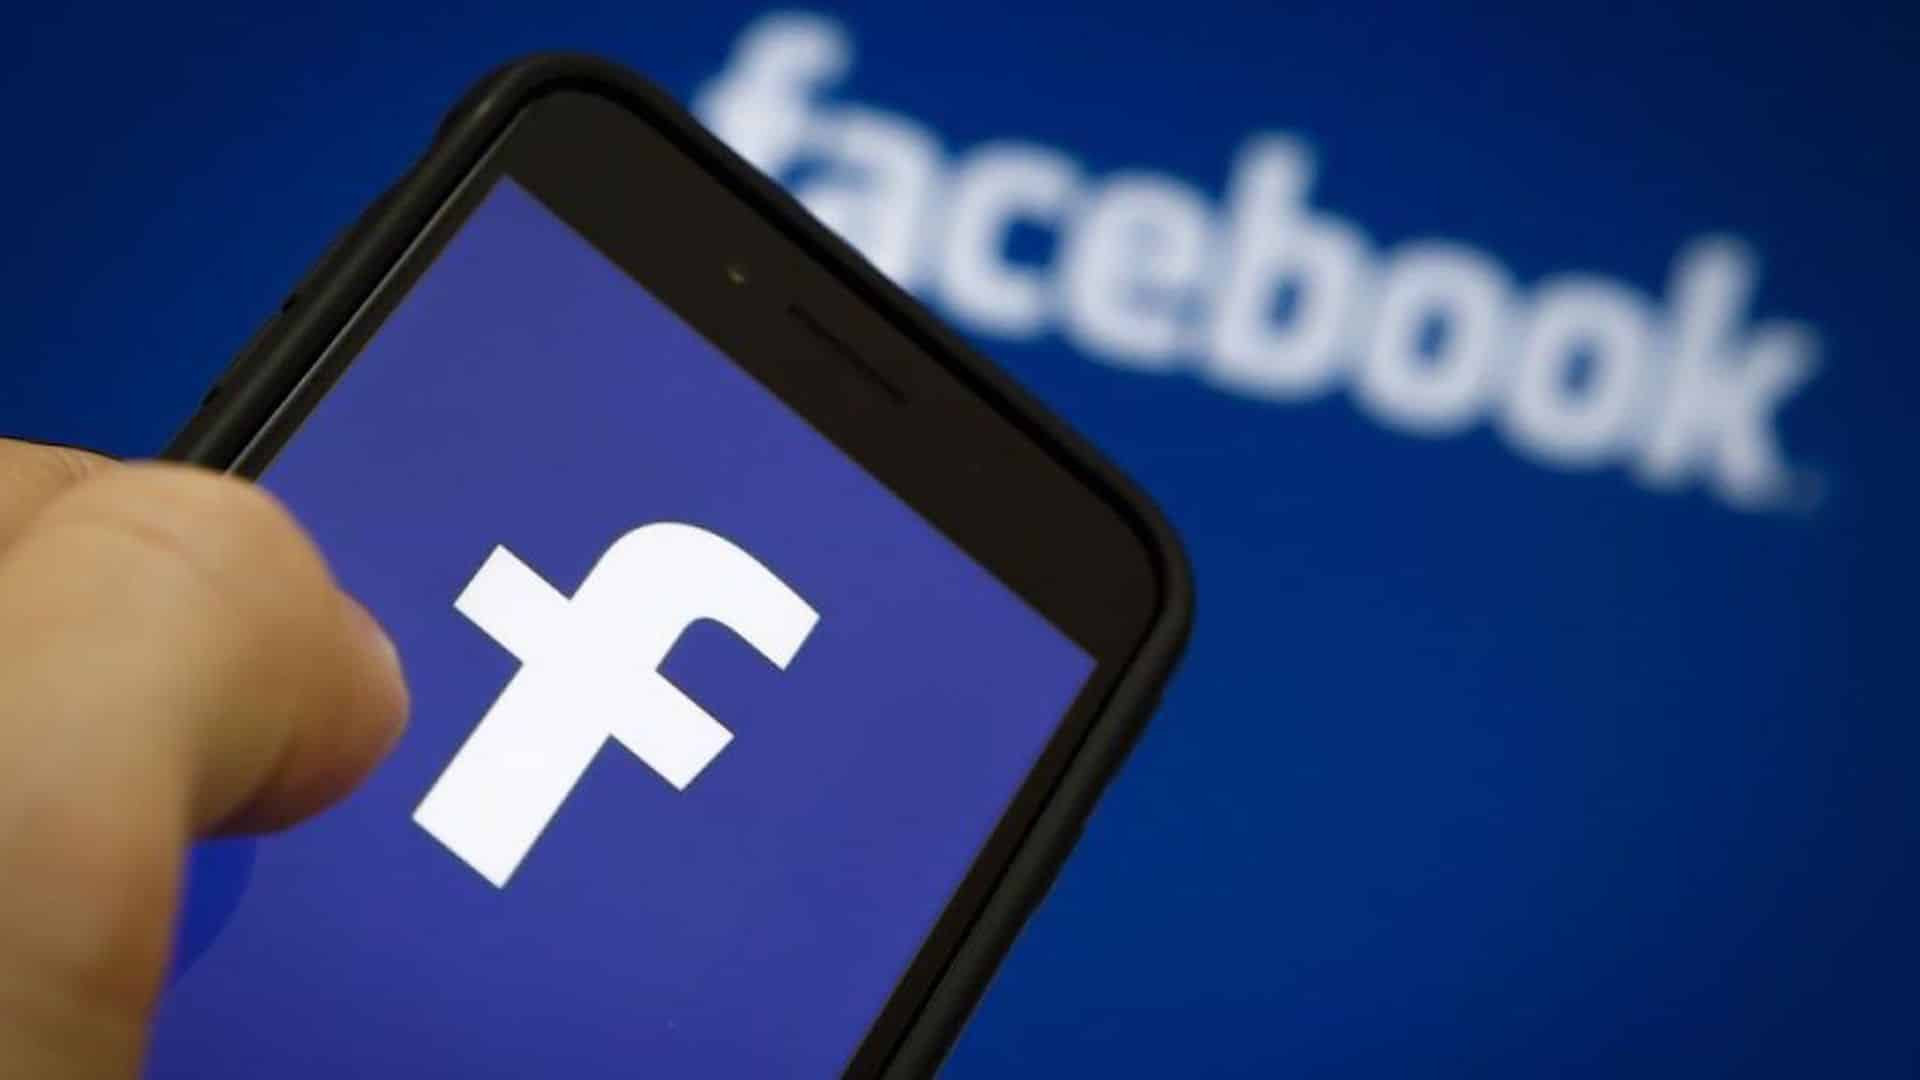 Facebook cáo buộc Apple về việc thu phí từ các sự kiện Facebook trả phí